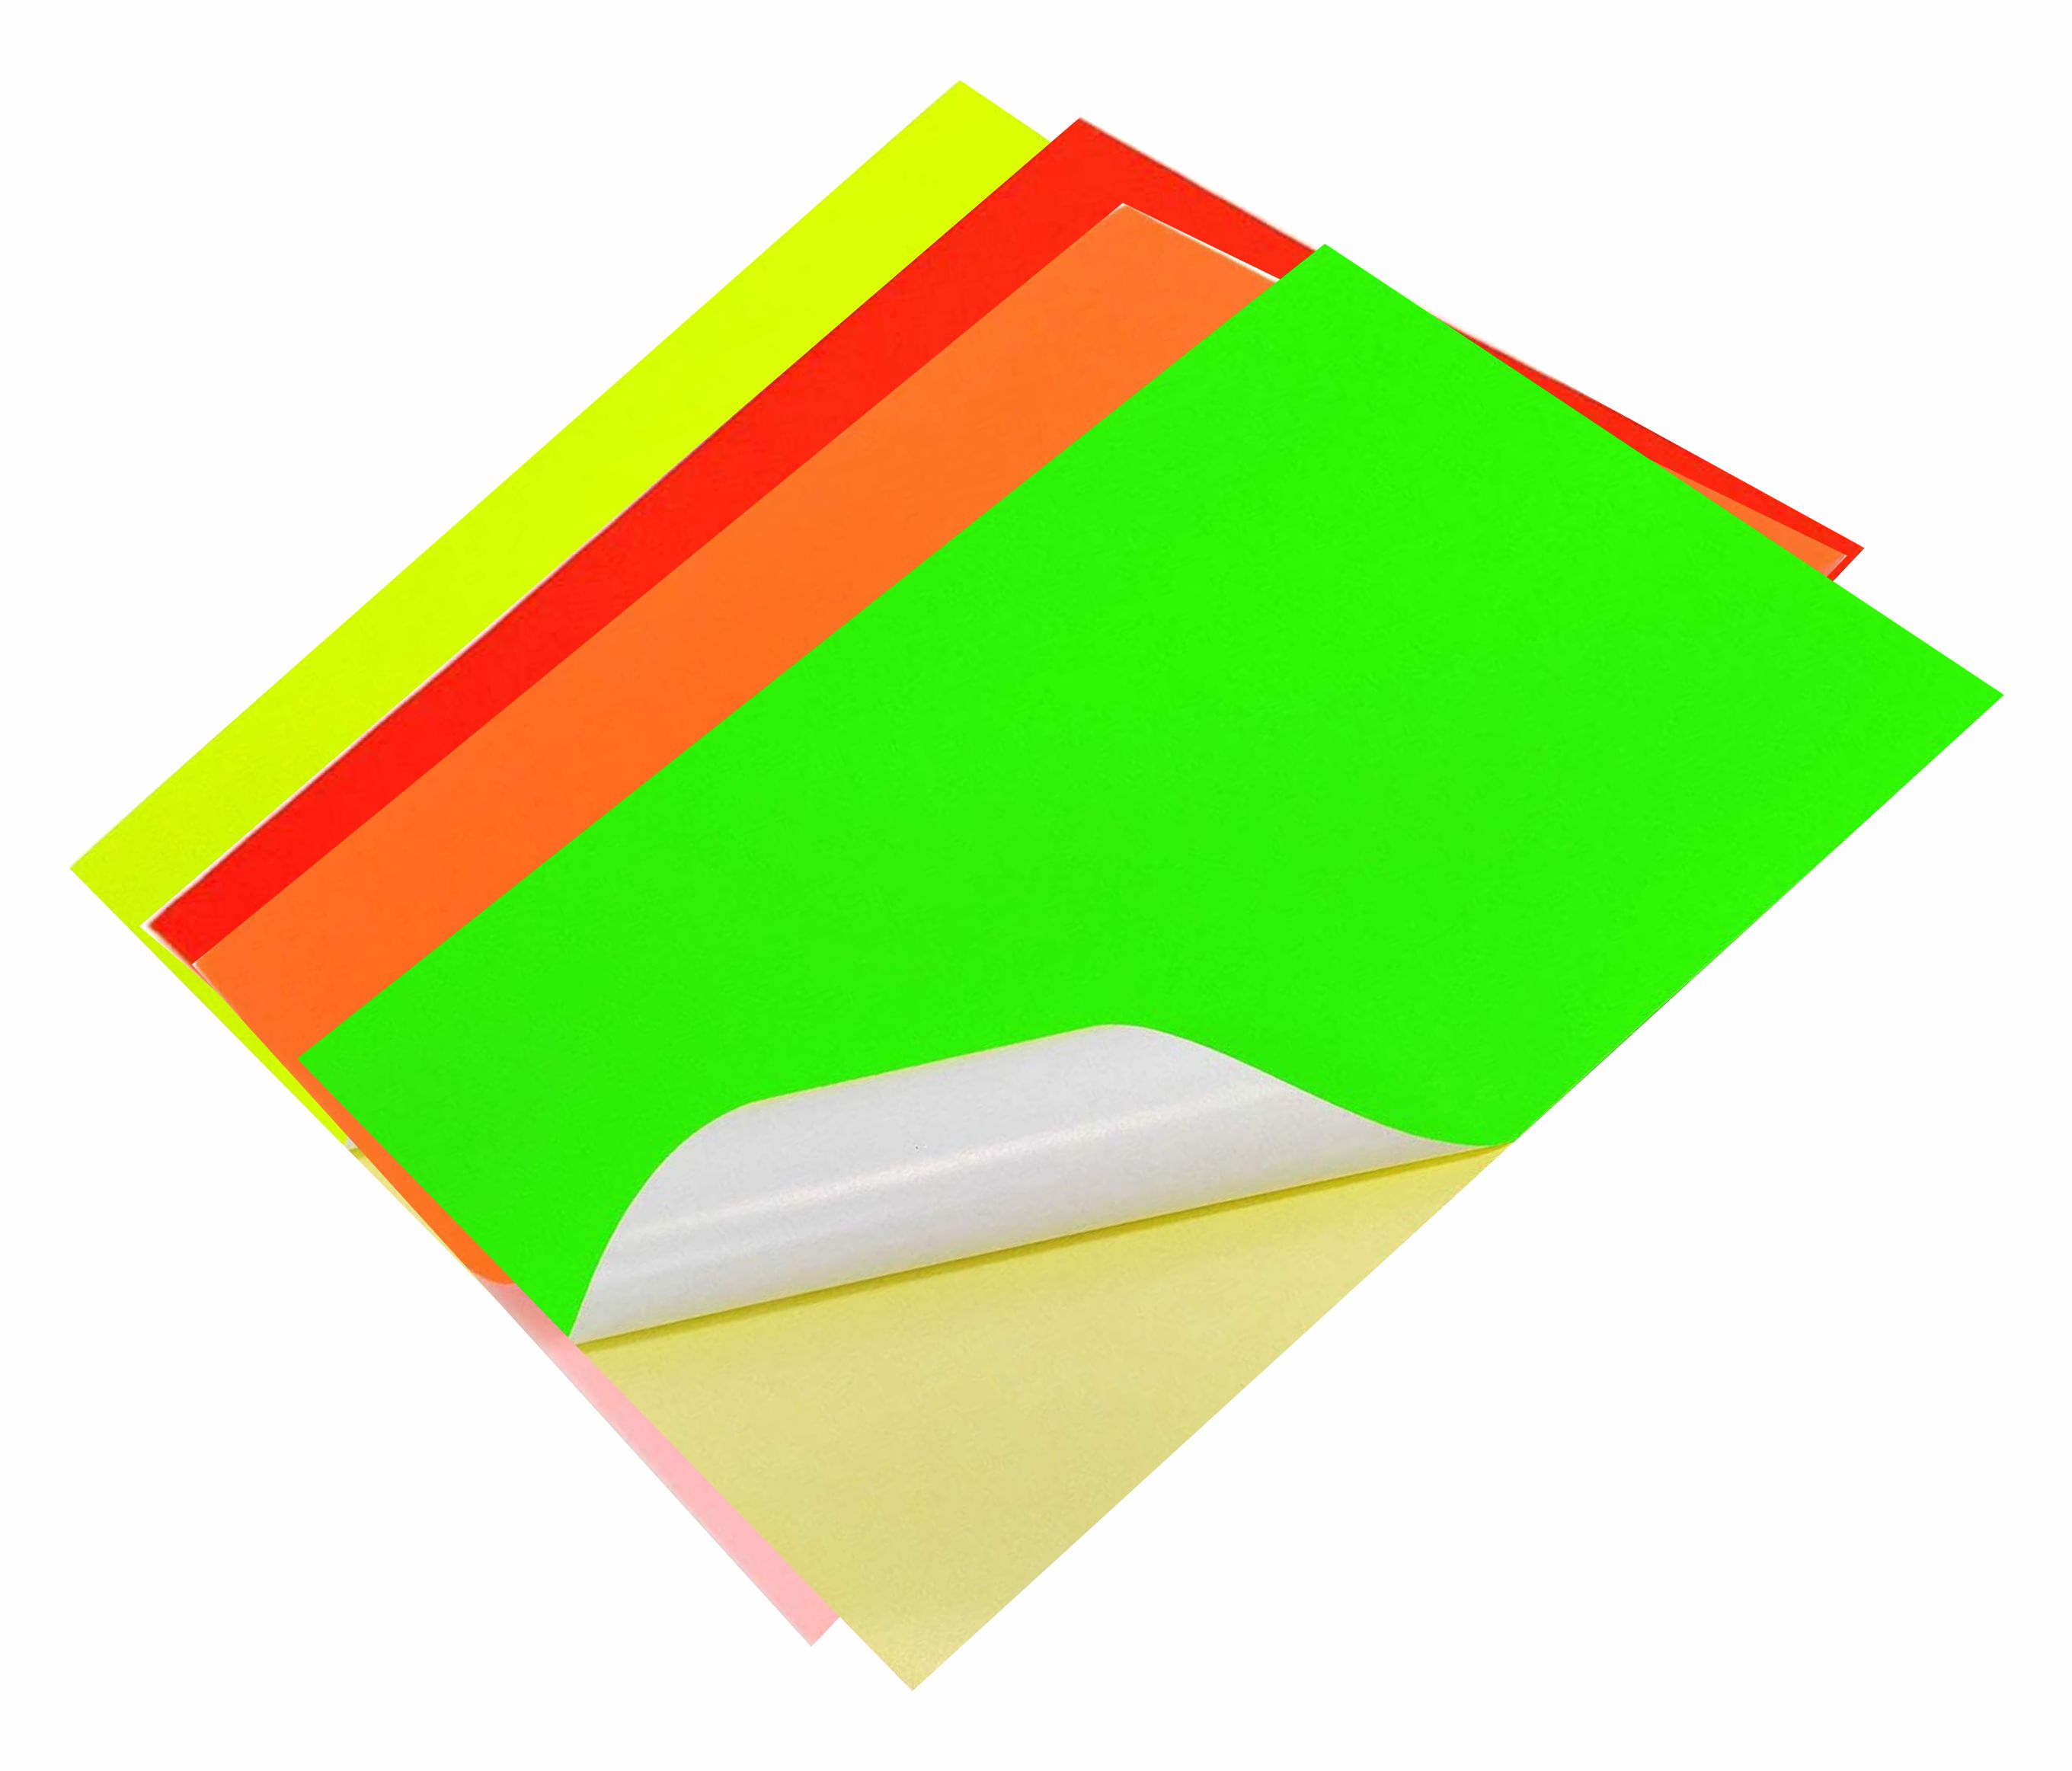 Papier autocollant coloré, 21 x 29,7 cm